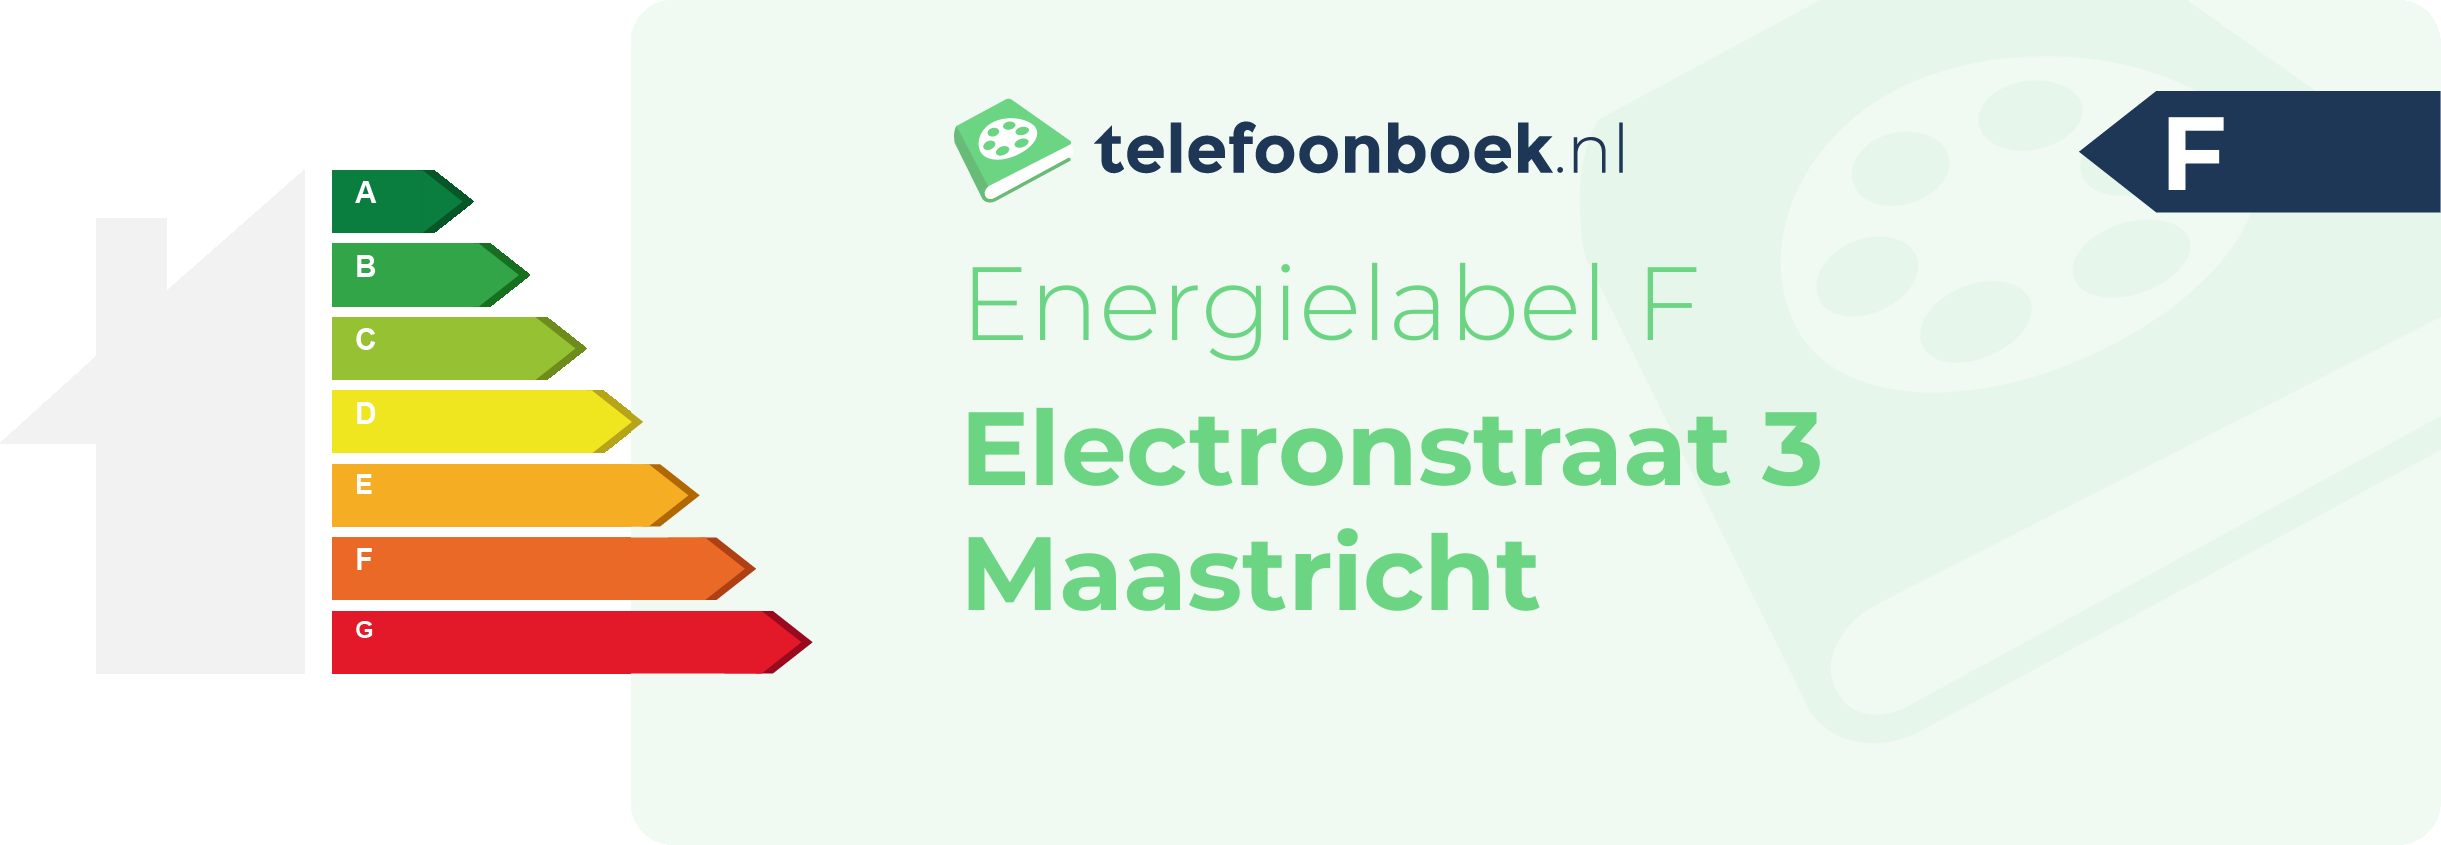 Energielabel Electronstraat 3 Maastricht